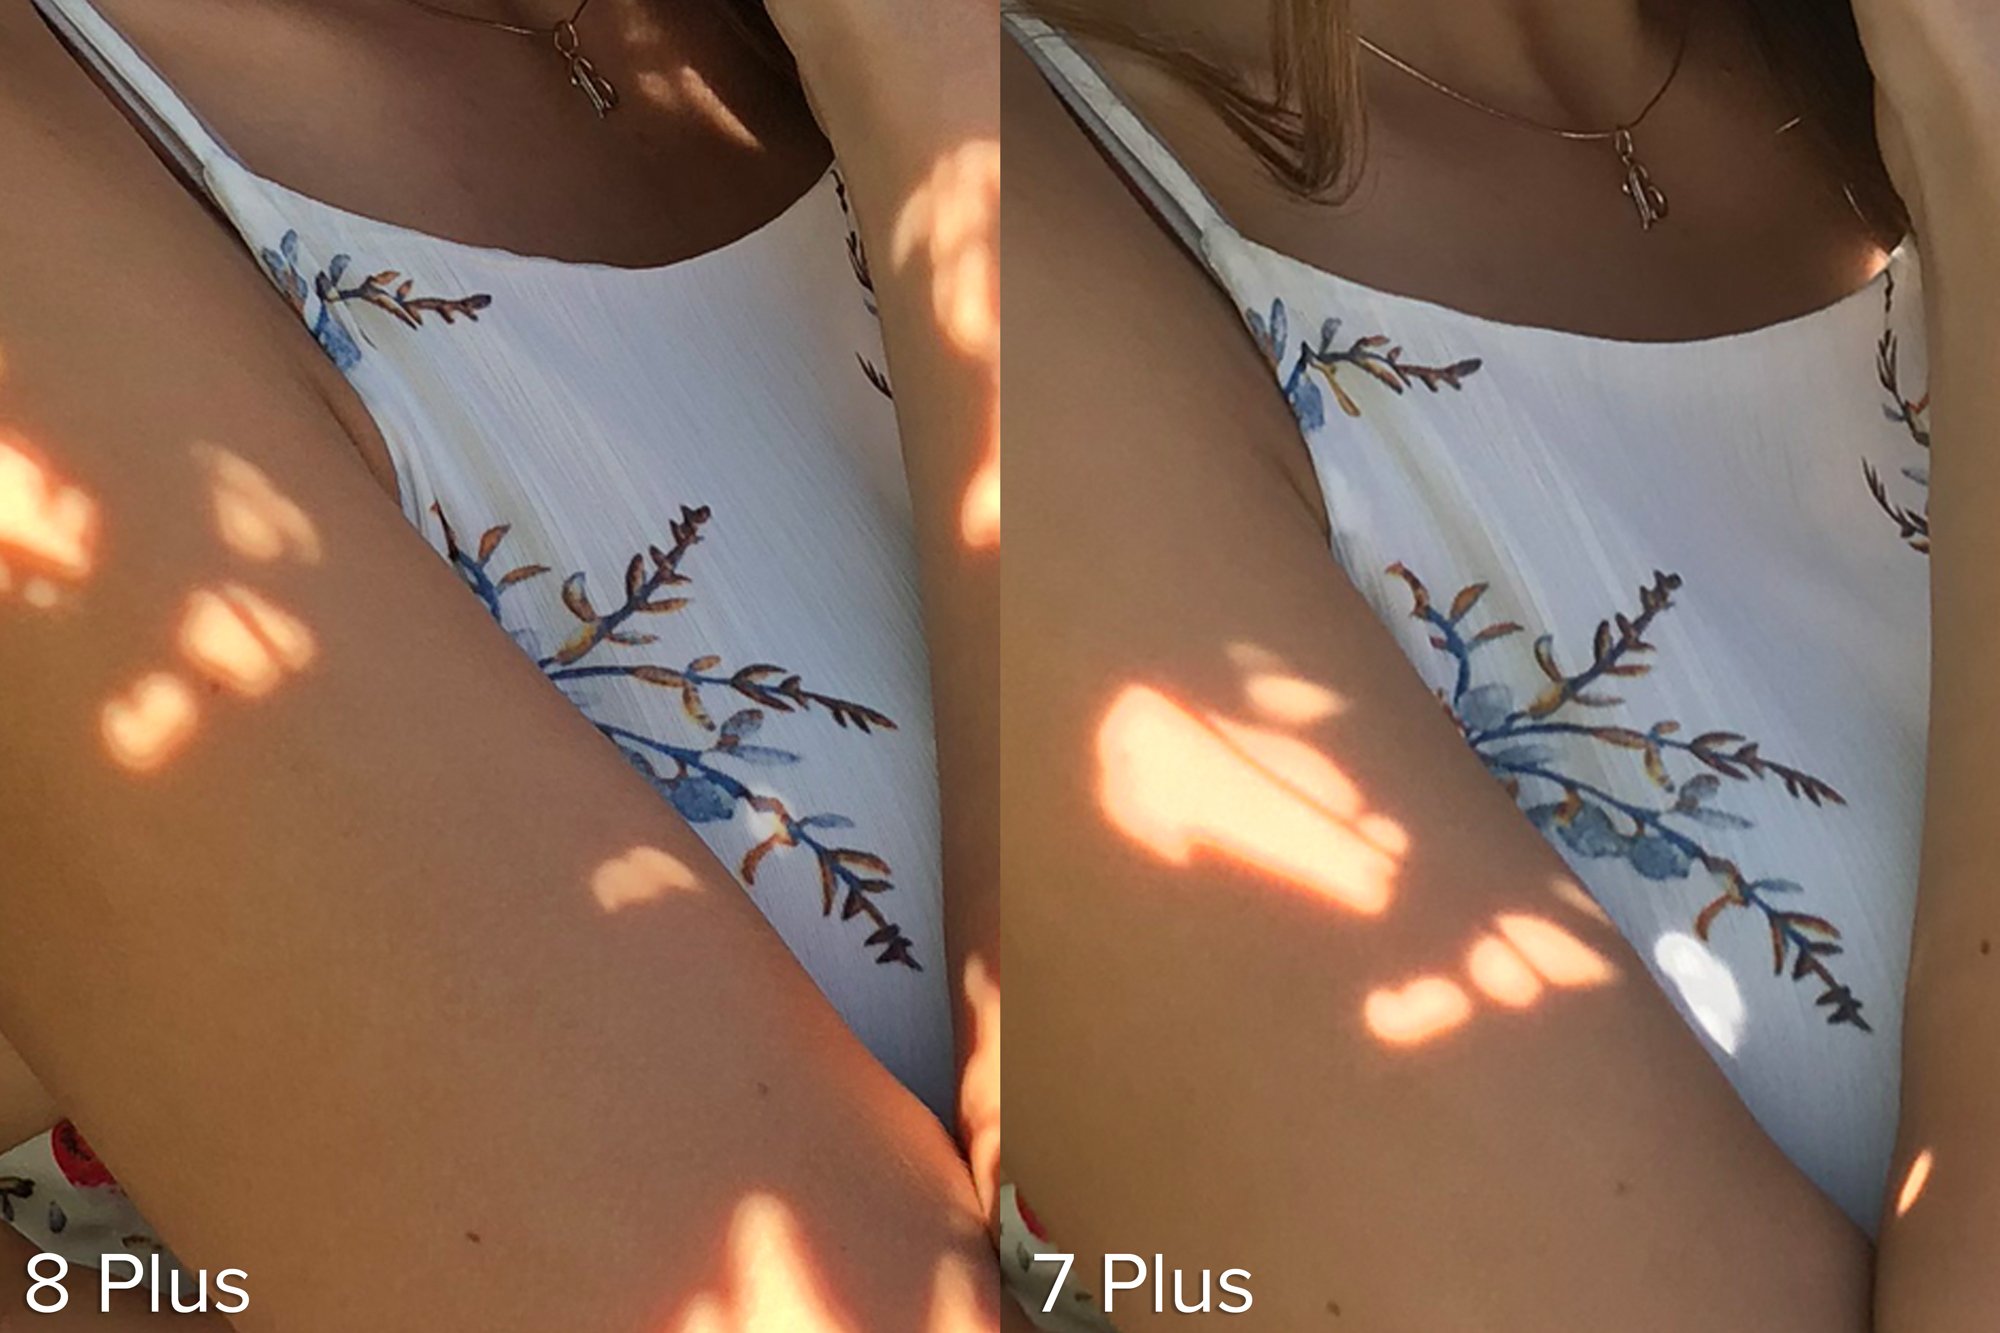 iphone 8 plus photos vs iphone 7 plus 16